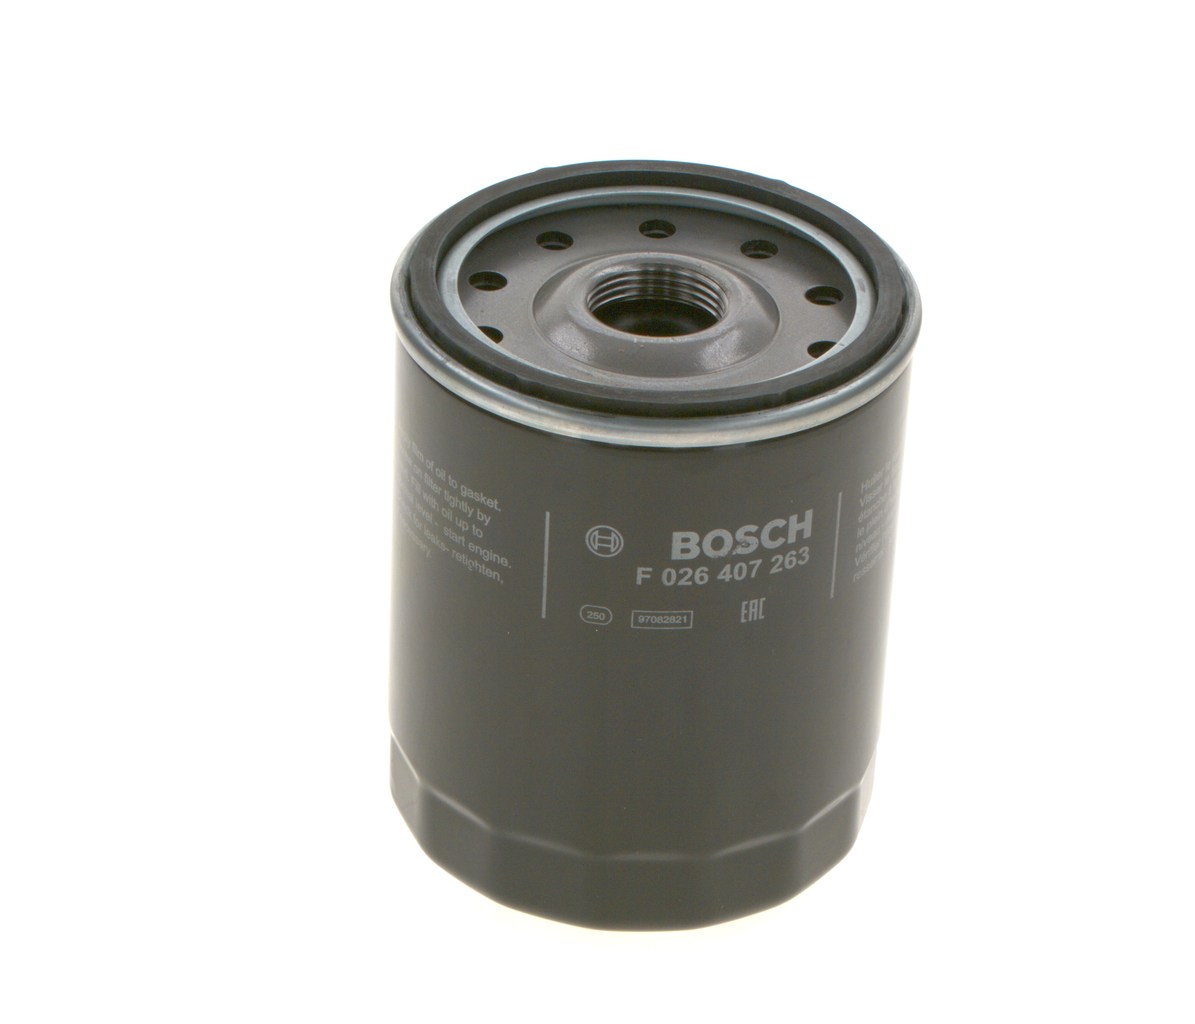 P 7263 BOSCH F026407263 Oil filter 190 1796